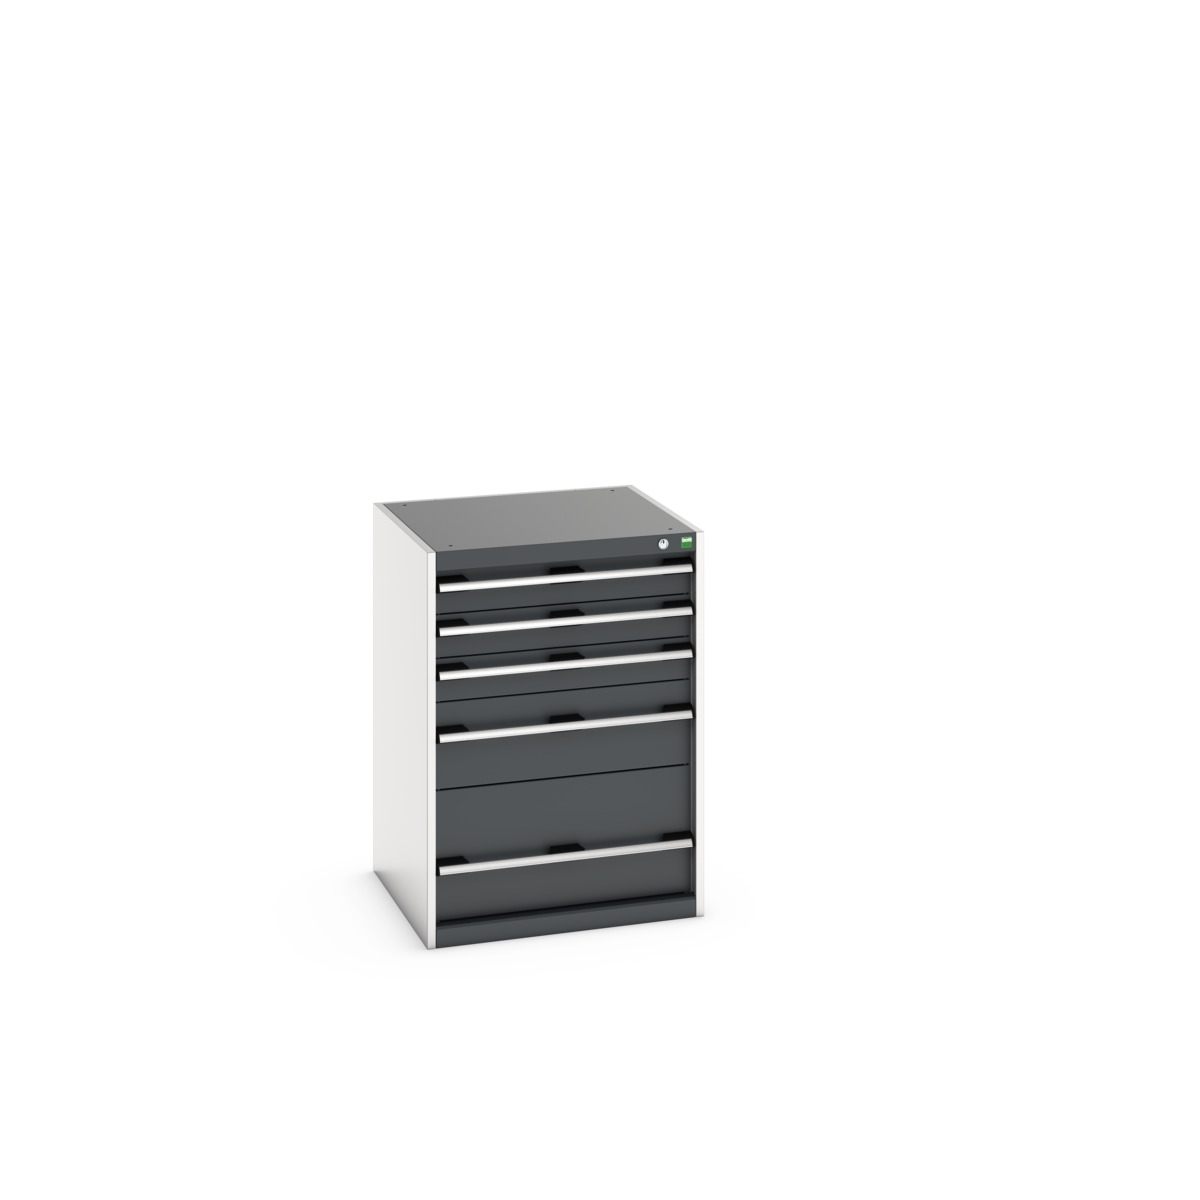 40019045.19V - cubio drawer cabinet